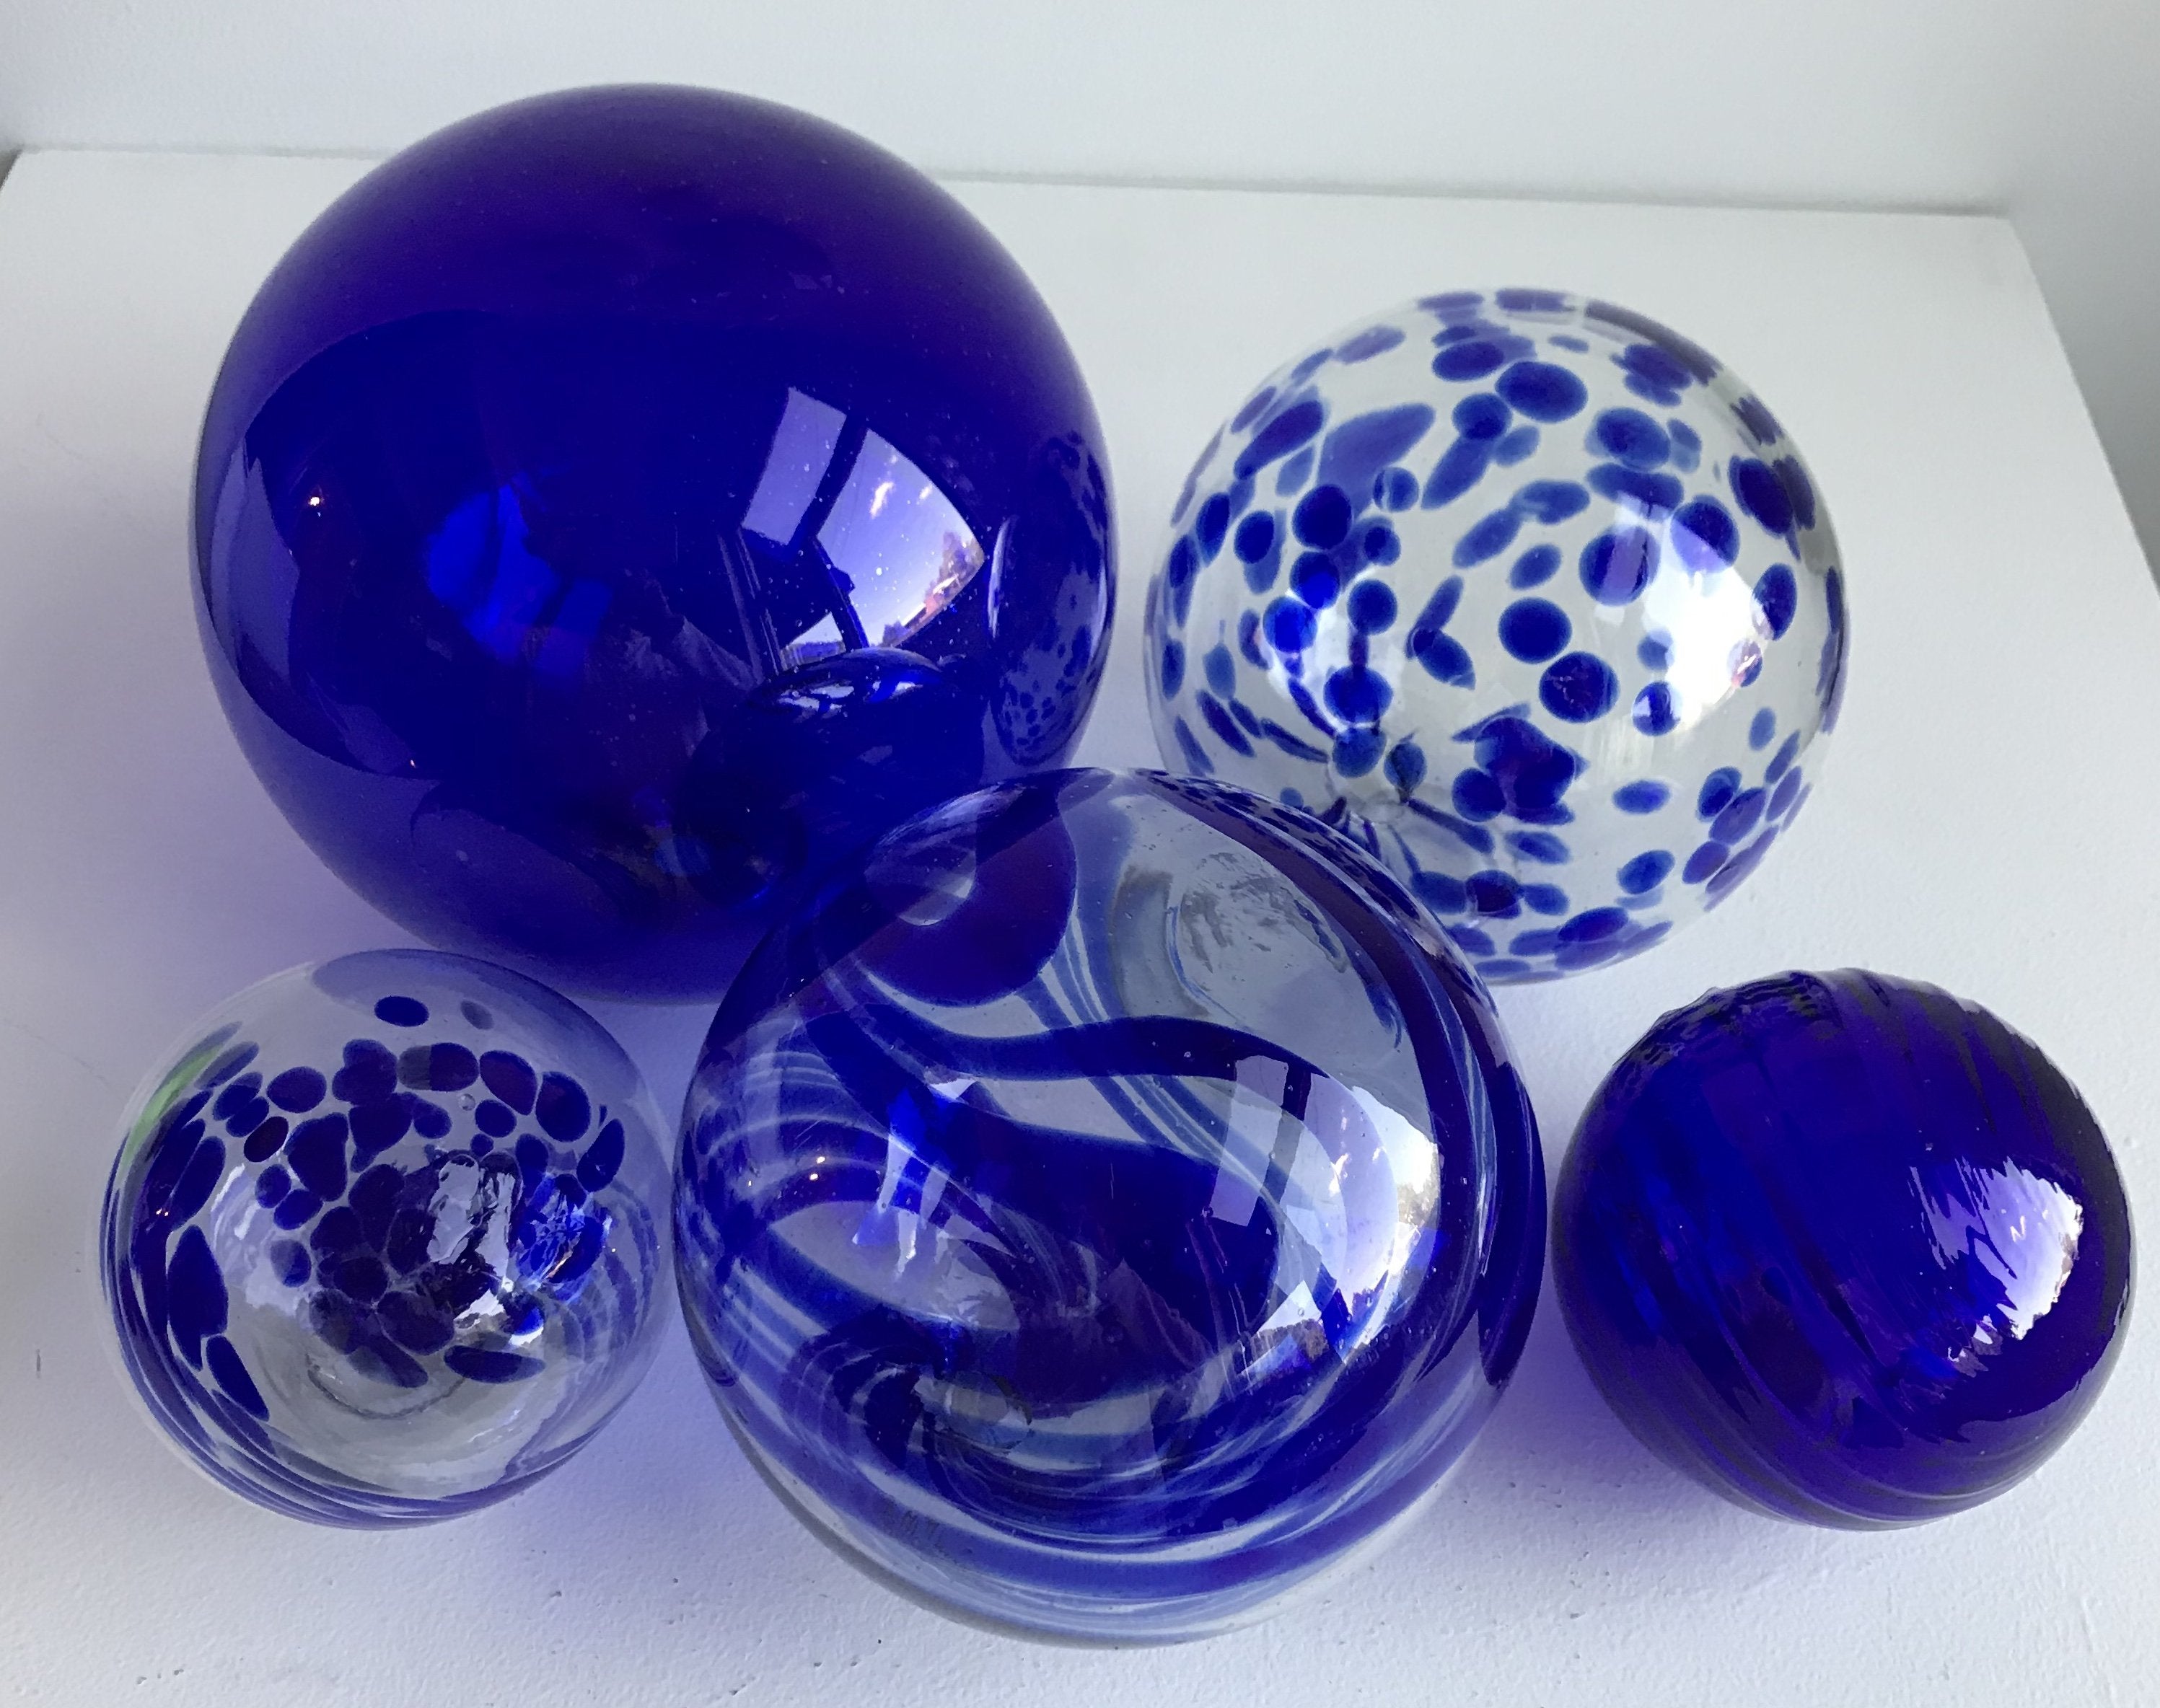 Decorative Colored Glass Balls